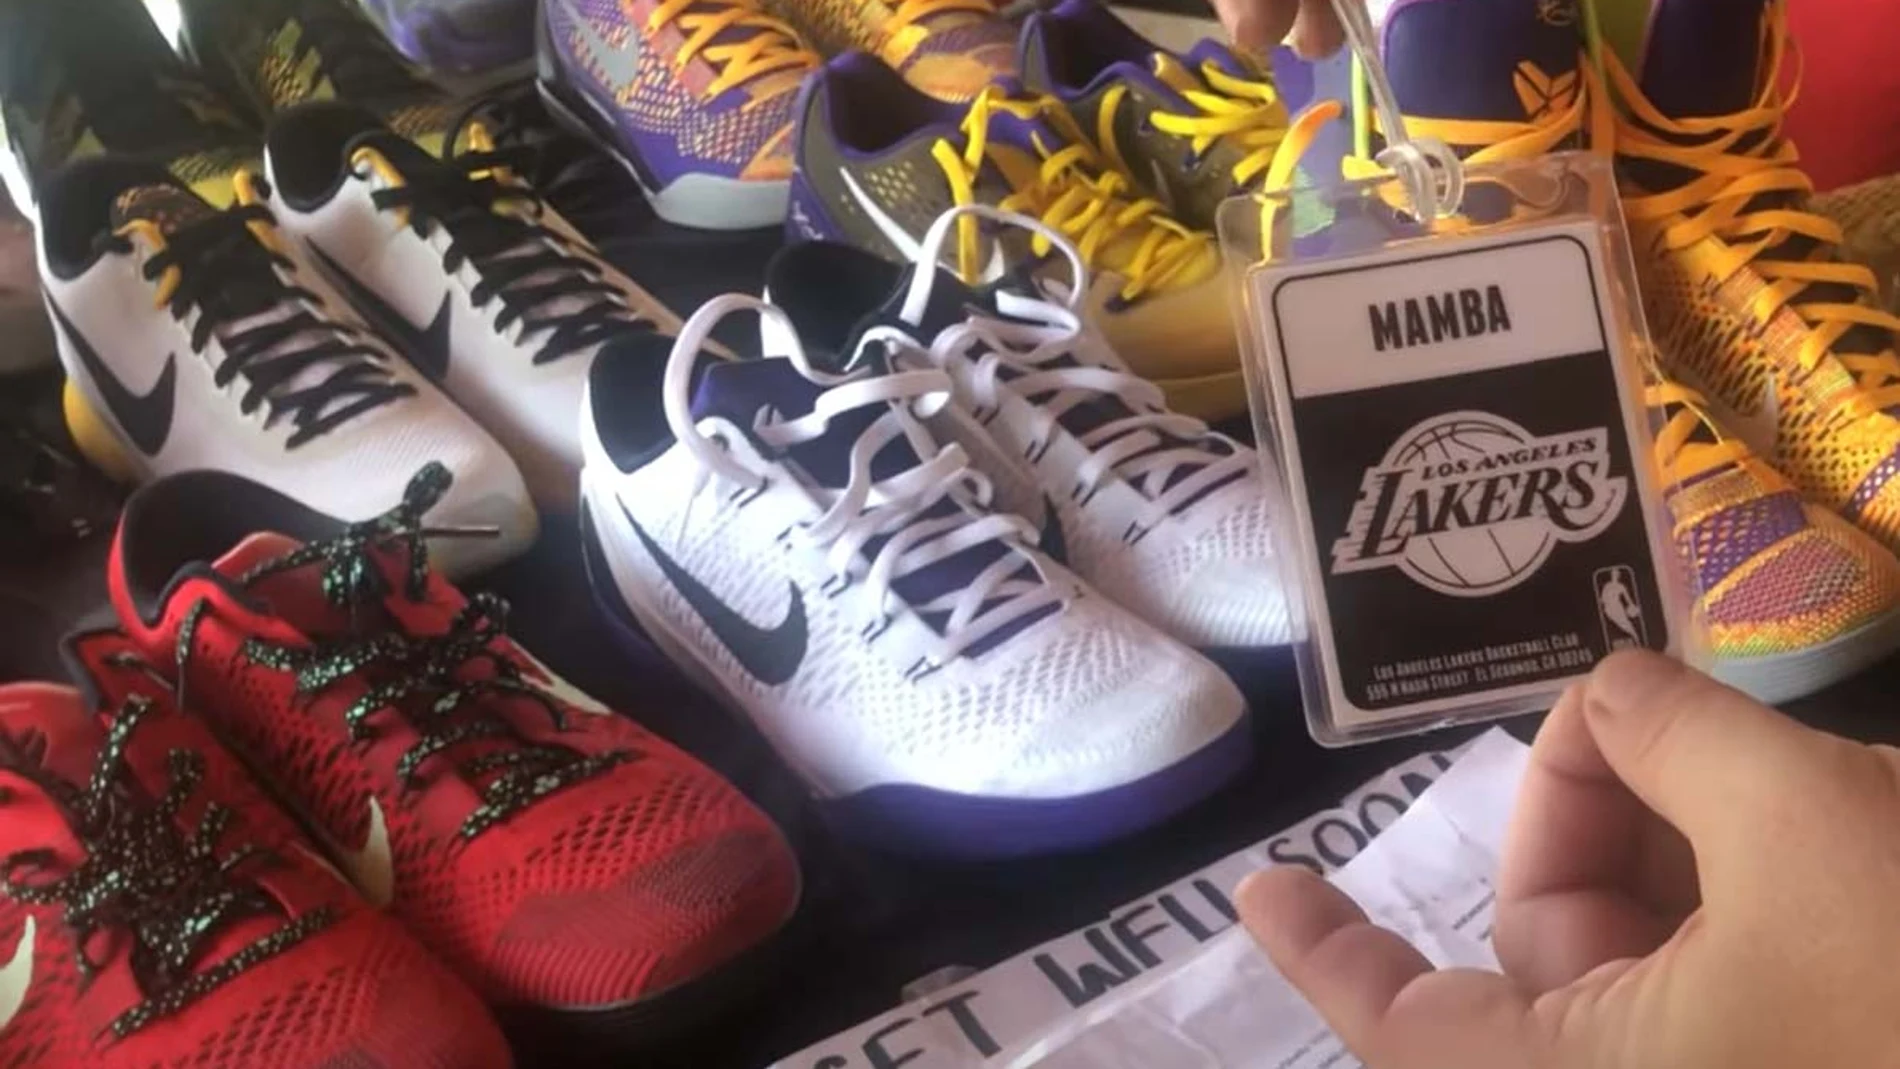 Un pase de los Lakers con el nombre Mamba y zapatillas que habrían pertenecido a Kobe Bryant.